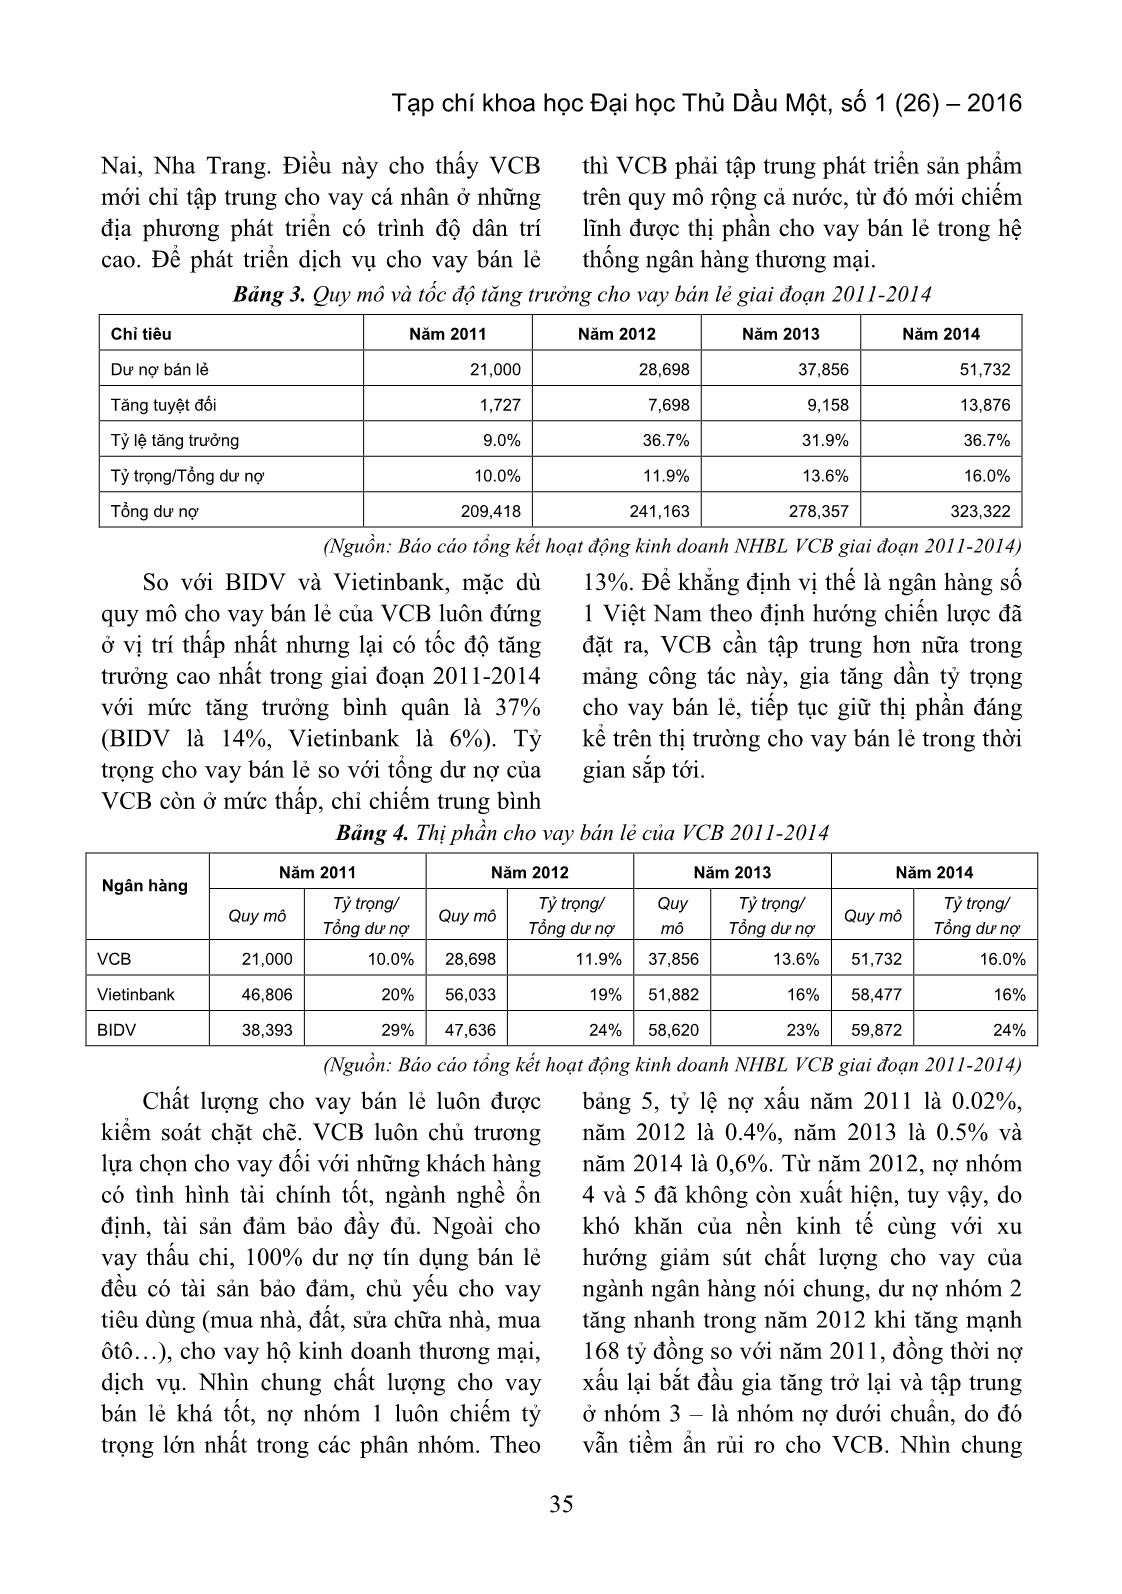 Dịch vụ ngân hàng bán lẻ tại ngân hàng thương mại Cổ phần Ngoại thương Việt Nam − thực trạng và giải pháp trang 3